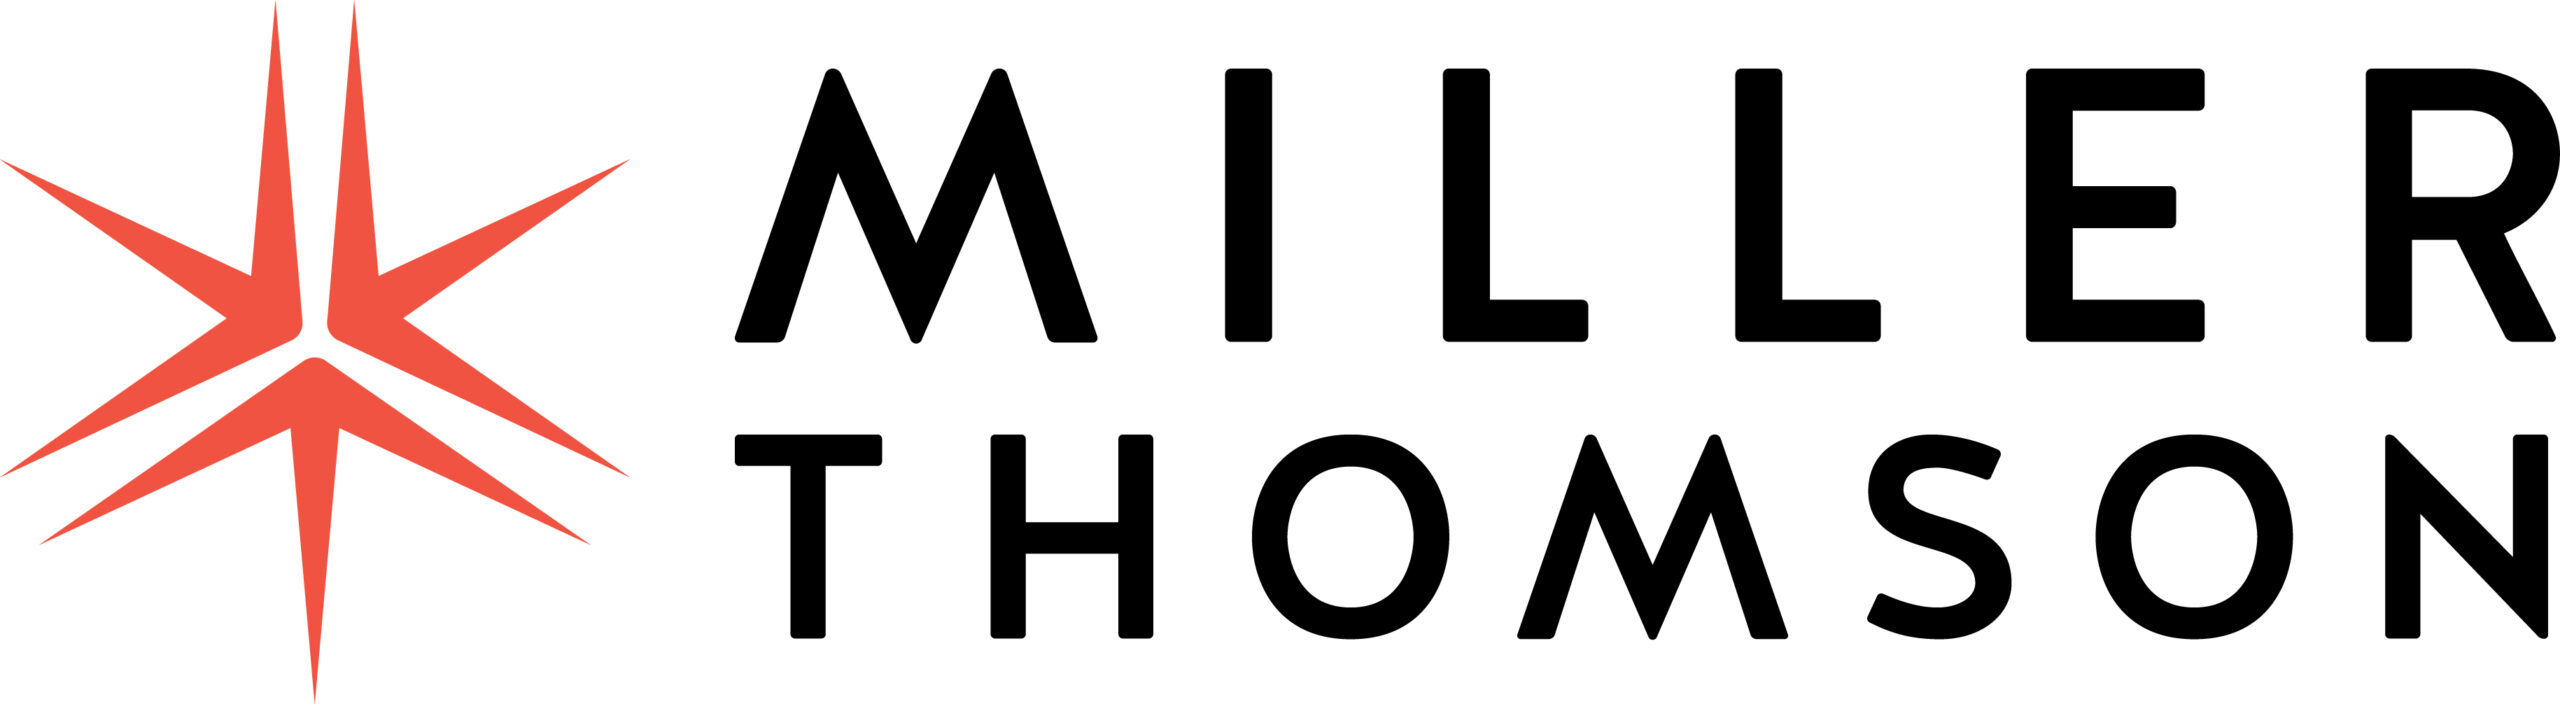 Miller Thomson SENCRL / Miller Thomson LLP